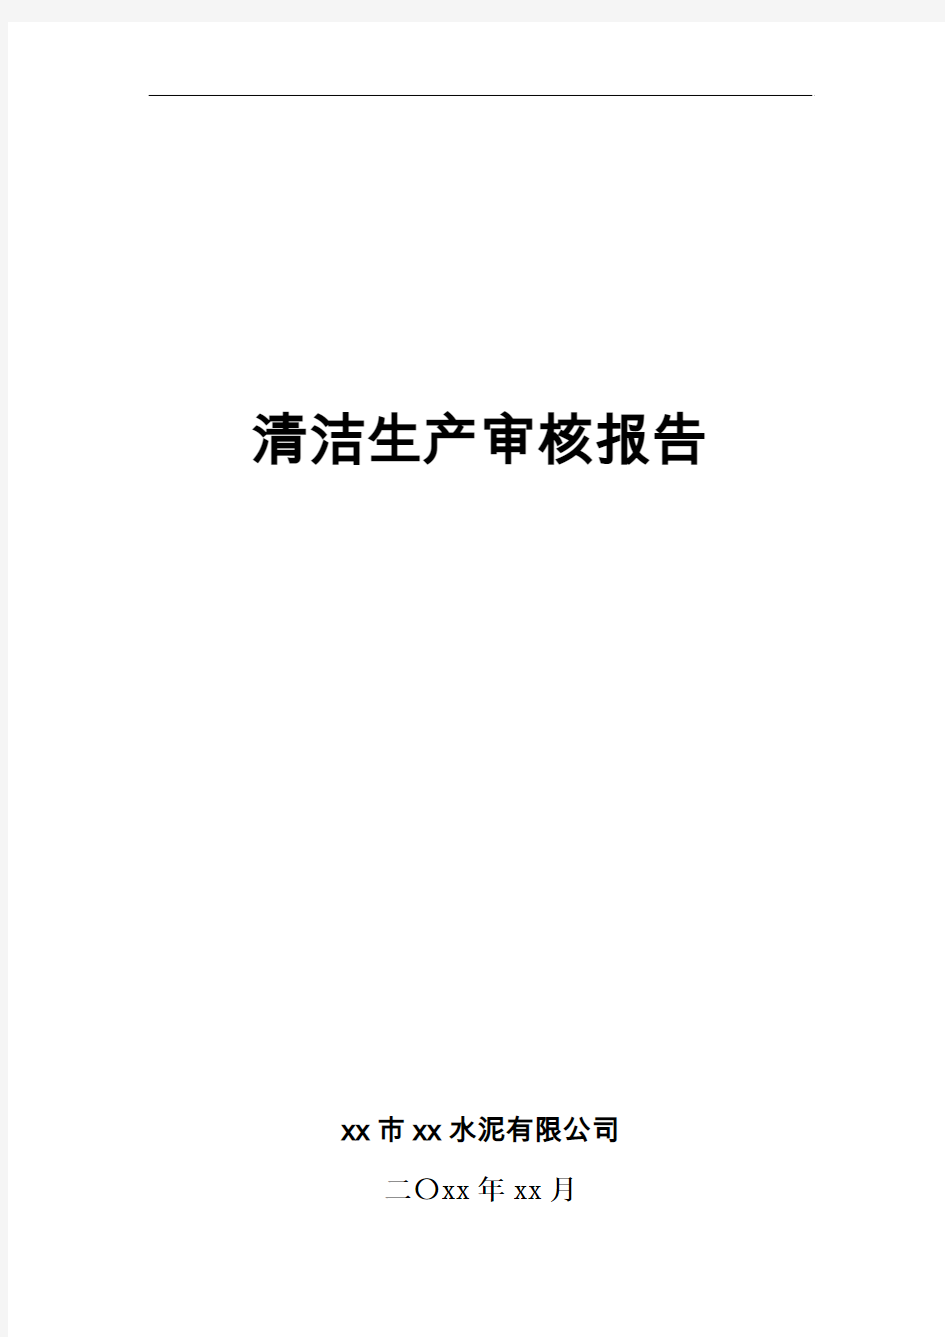 xx市xx水泥清洁生产审核报告(粉磨站第二家)(2015年上传)